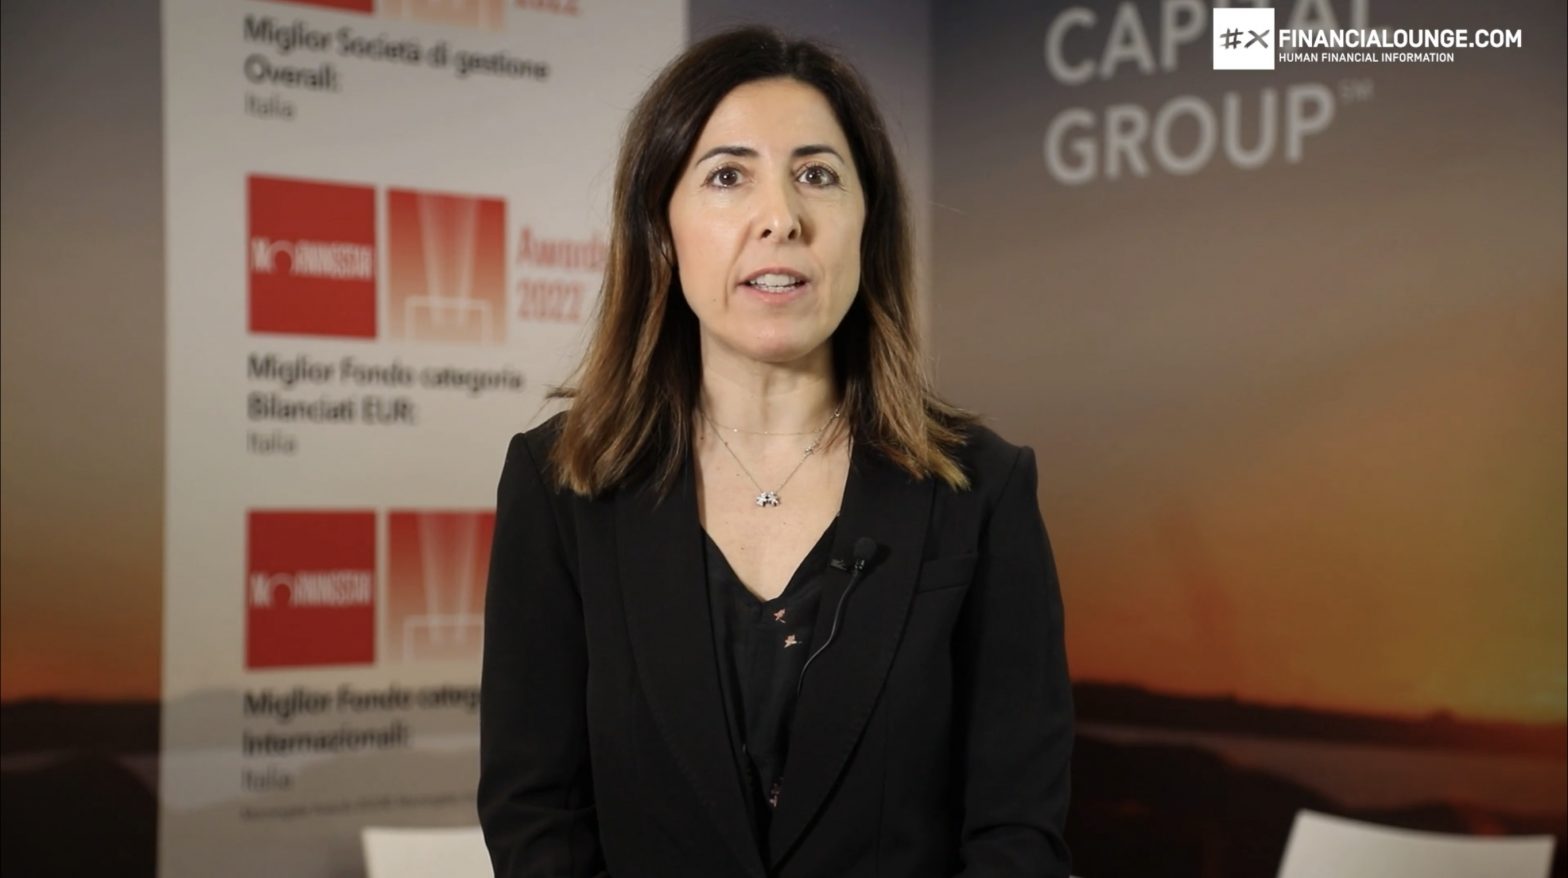 financialounge.com Prima giornata del Salone del Risparmio, l’opinione di Cristina Mazzurana di Capital Group